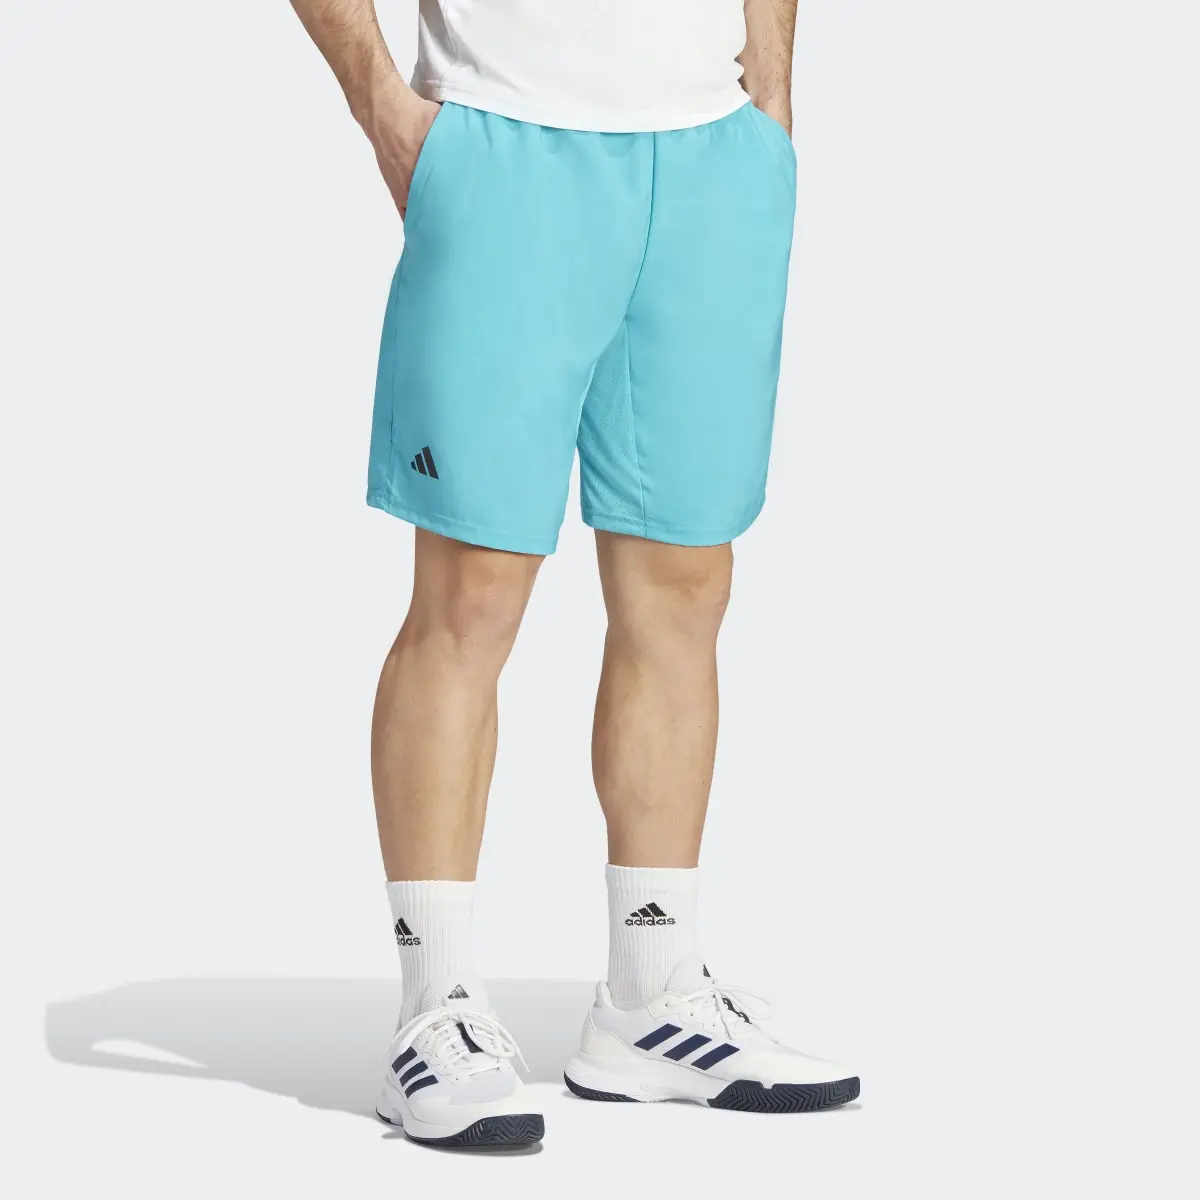 Adidas Club 3-Stripes Tennis Shorts. 3